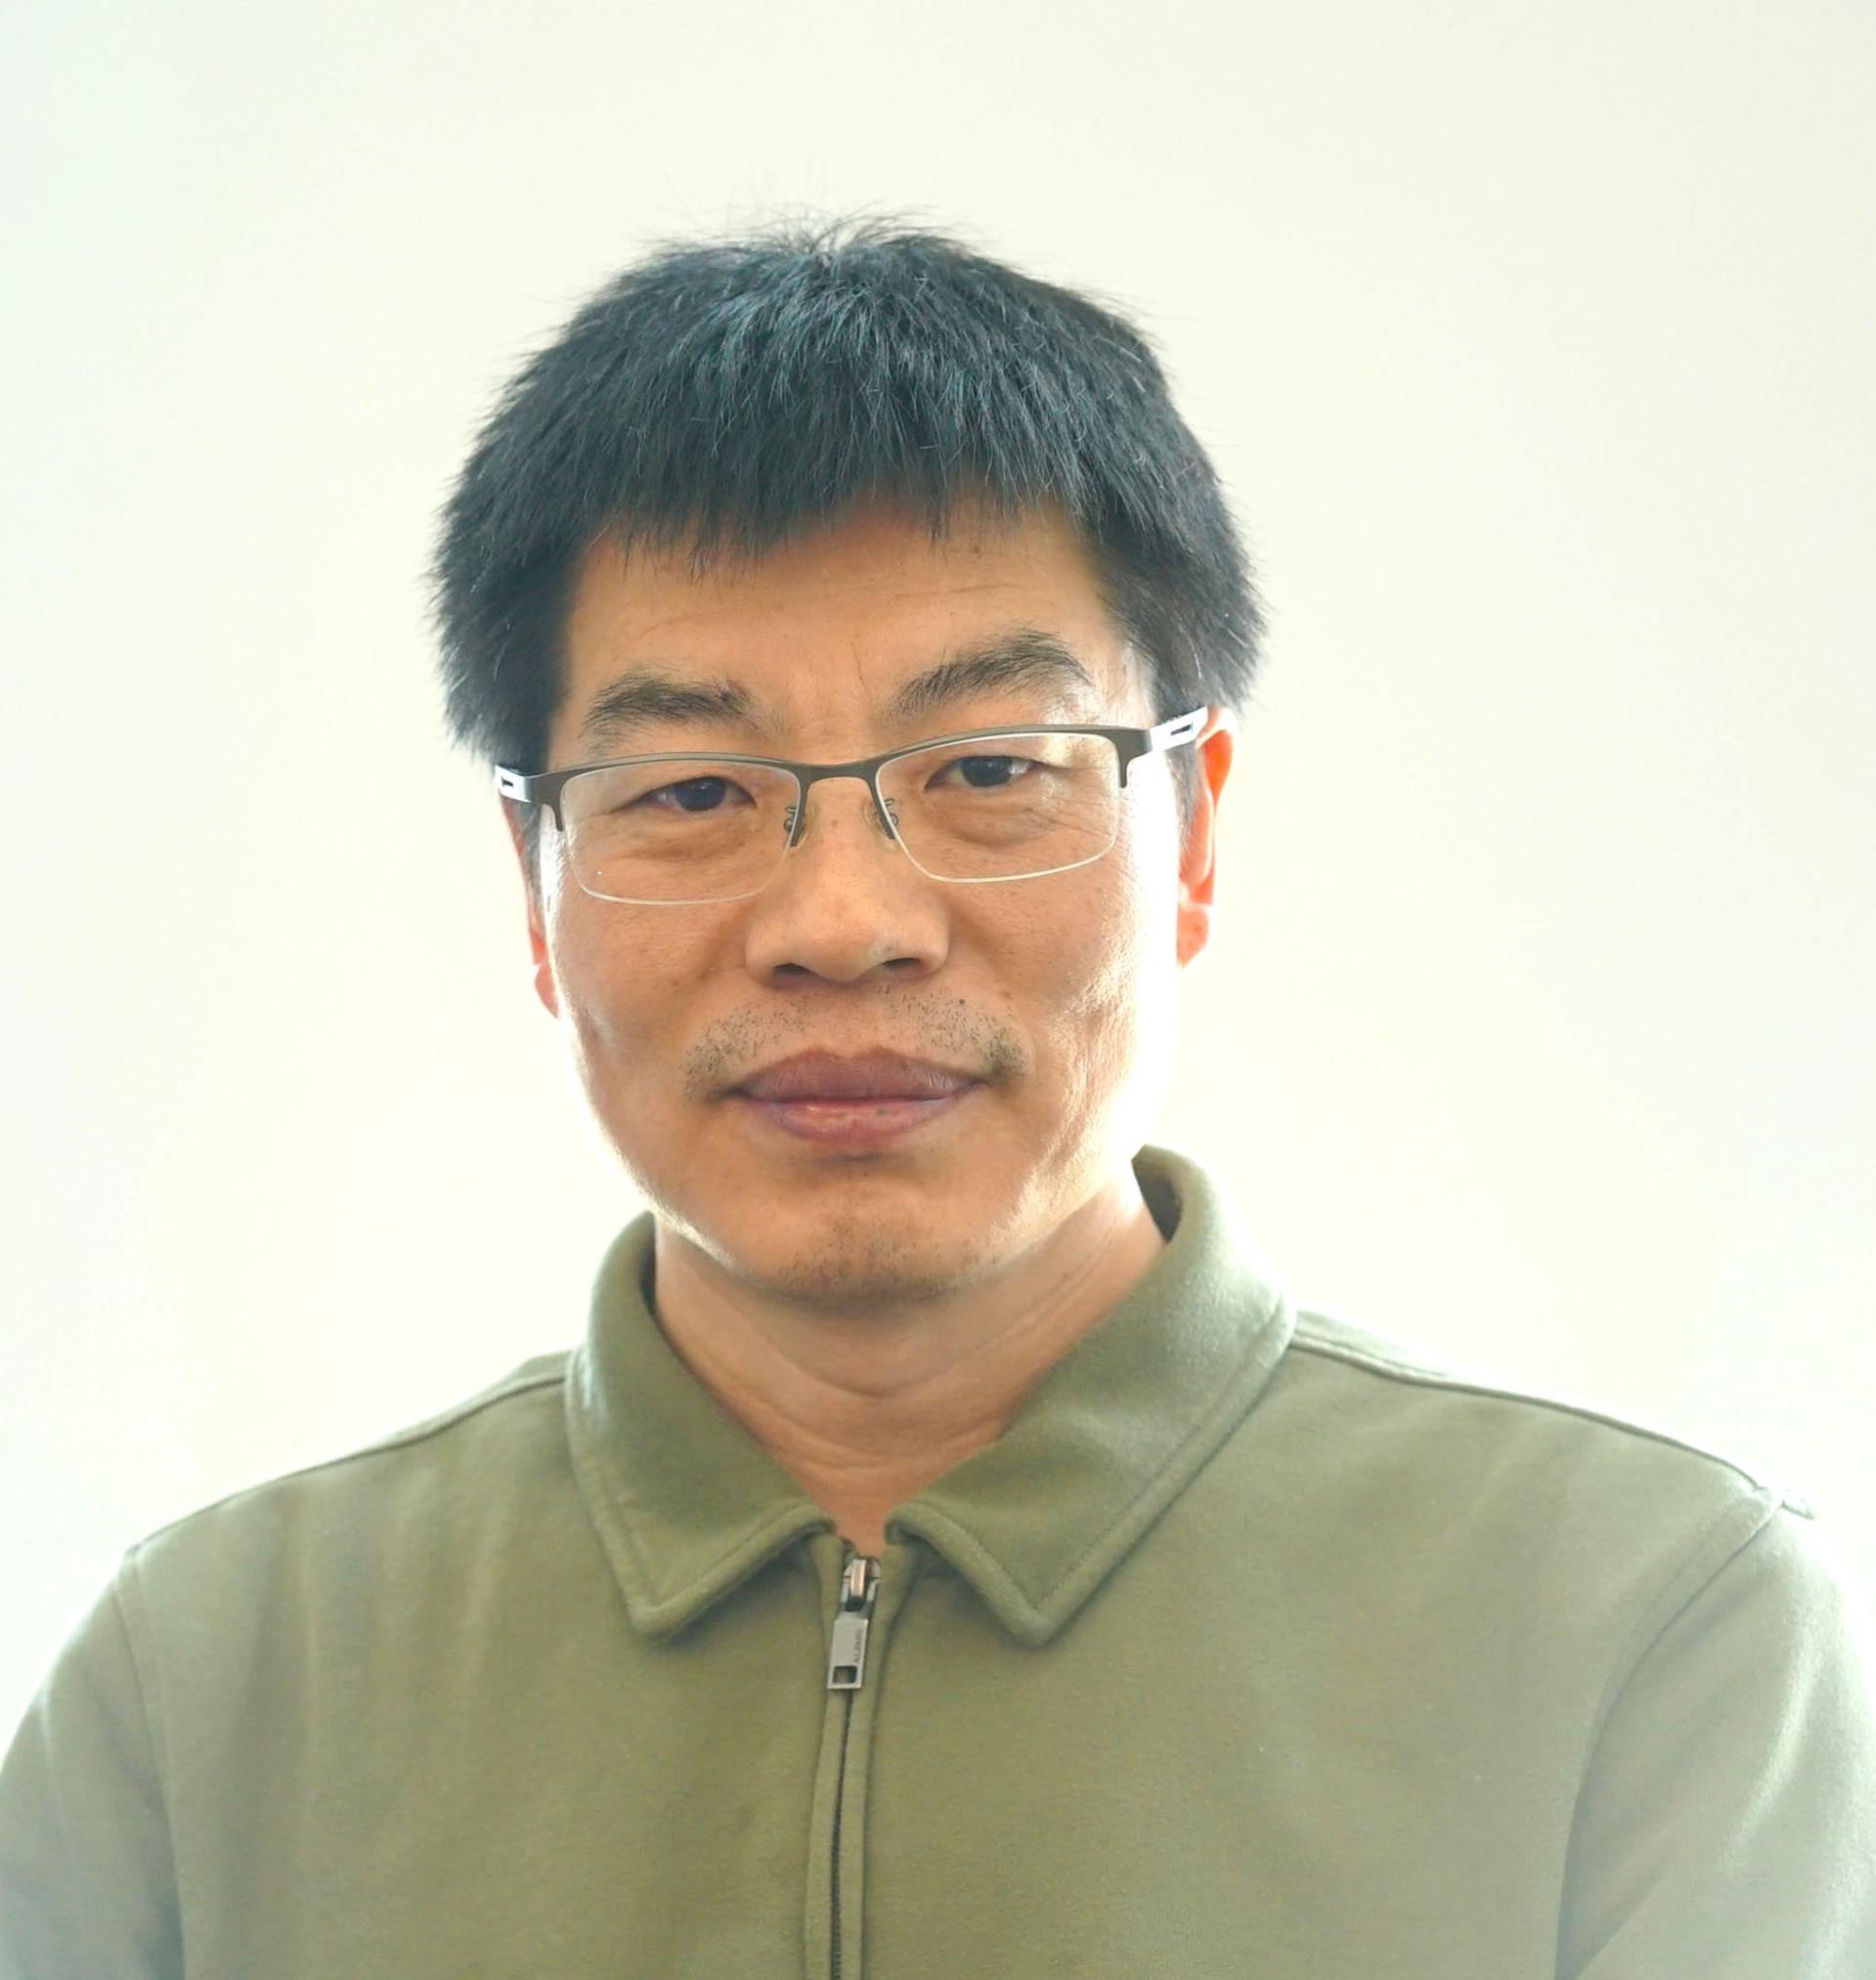 Portrait of Devin Chen